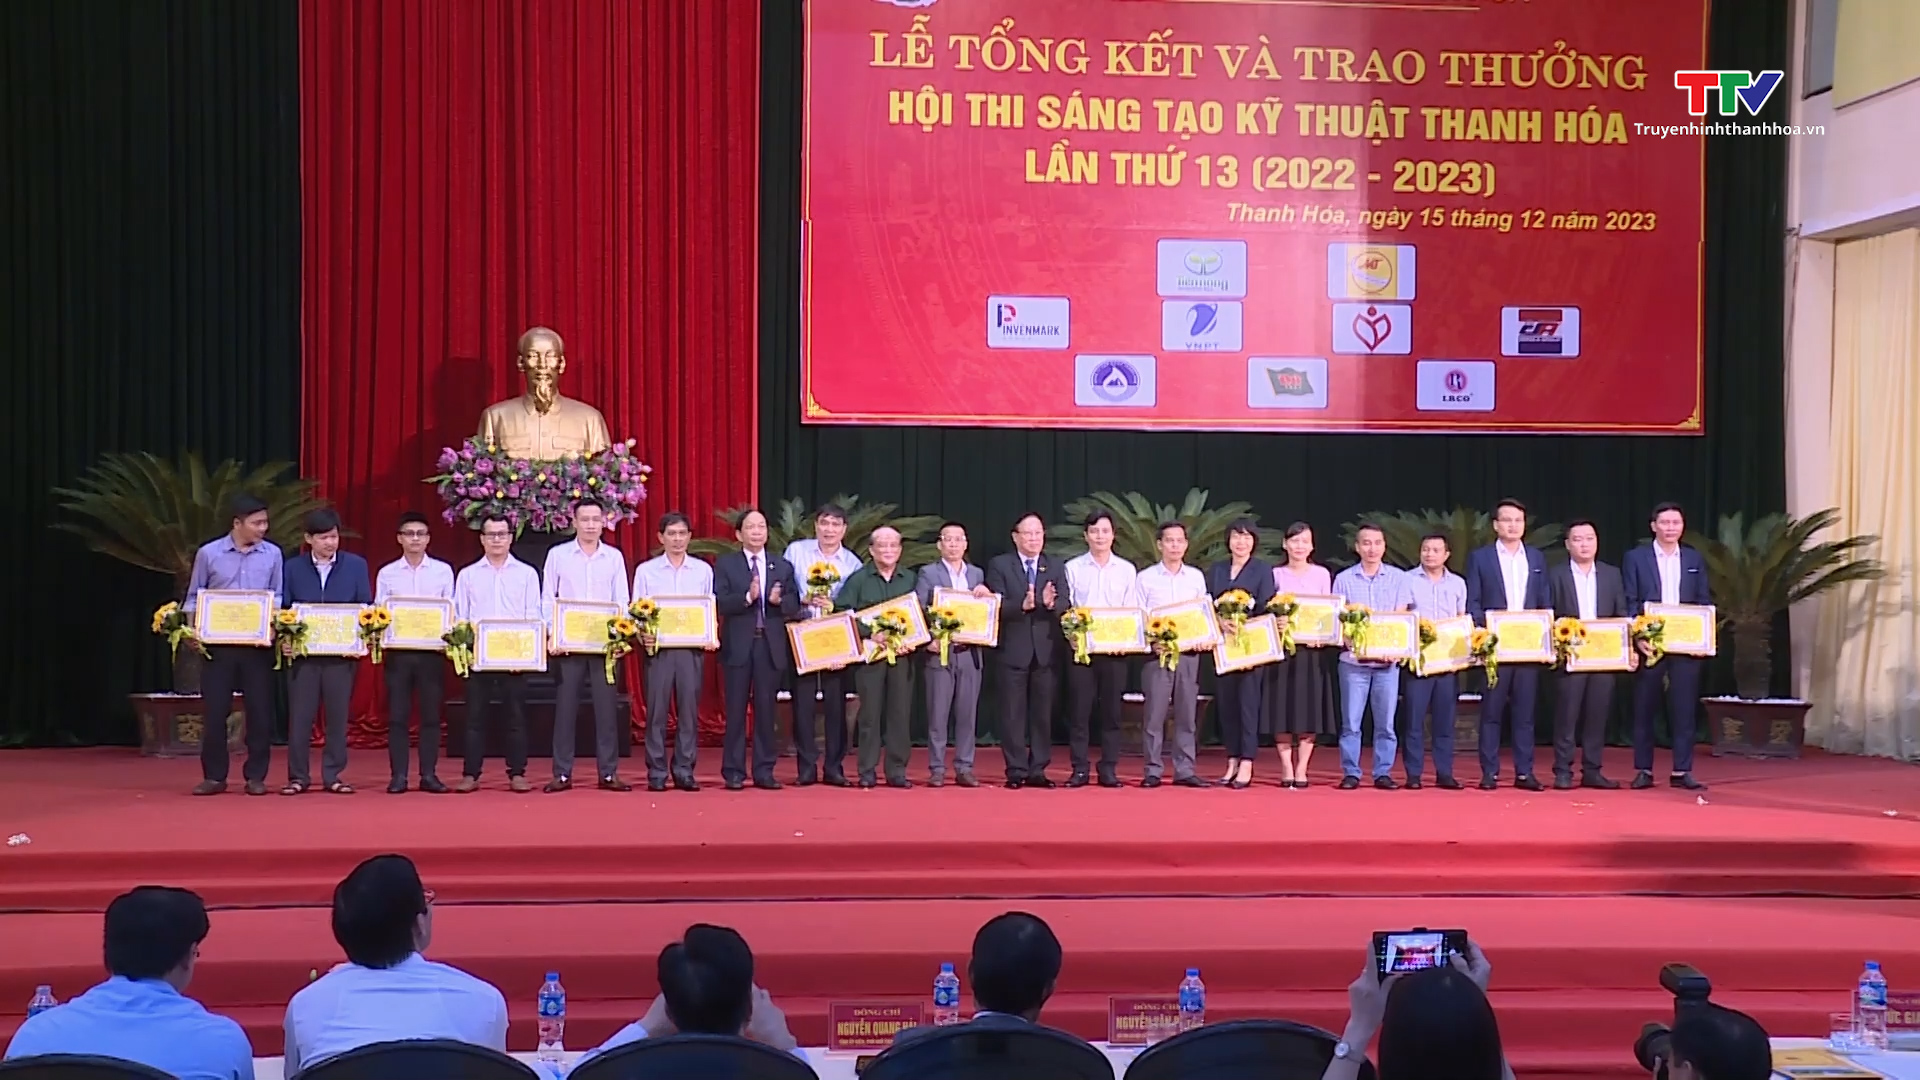 Tổng kết và trao thưởng Hội thi Sáng tạo kỹ thuật Thanh Hoá lần thứ 13 (2022 - 2023)- Ảnh 6.